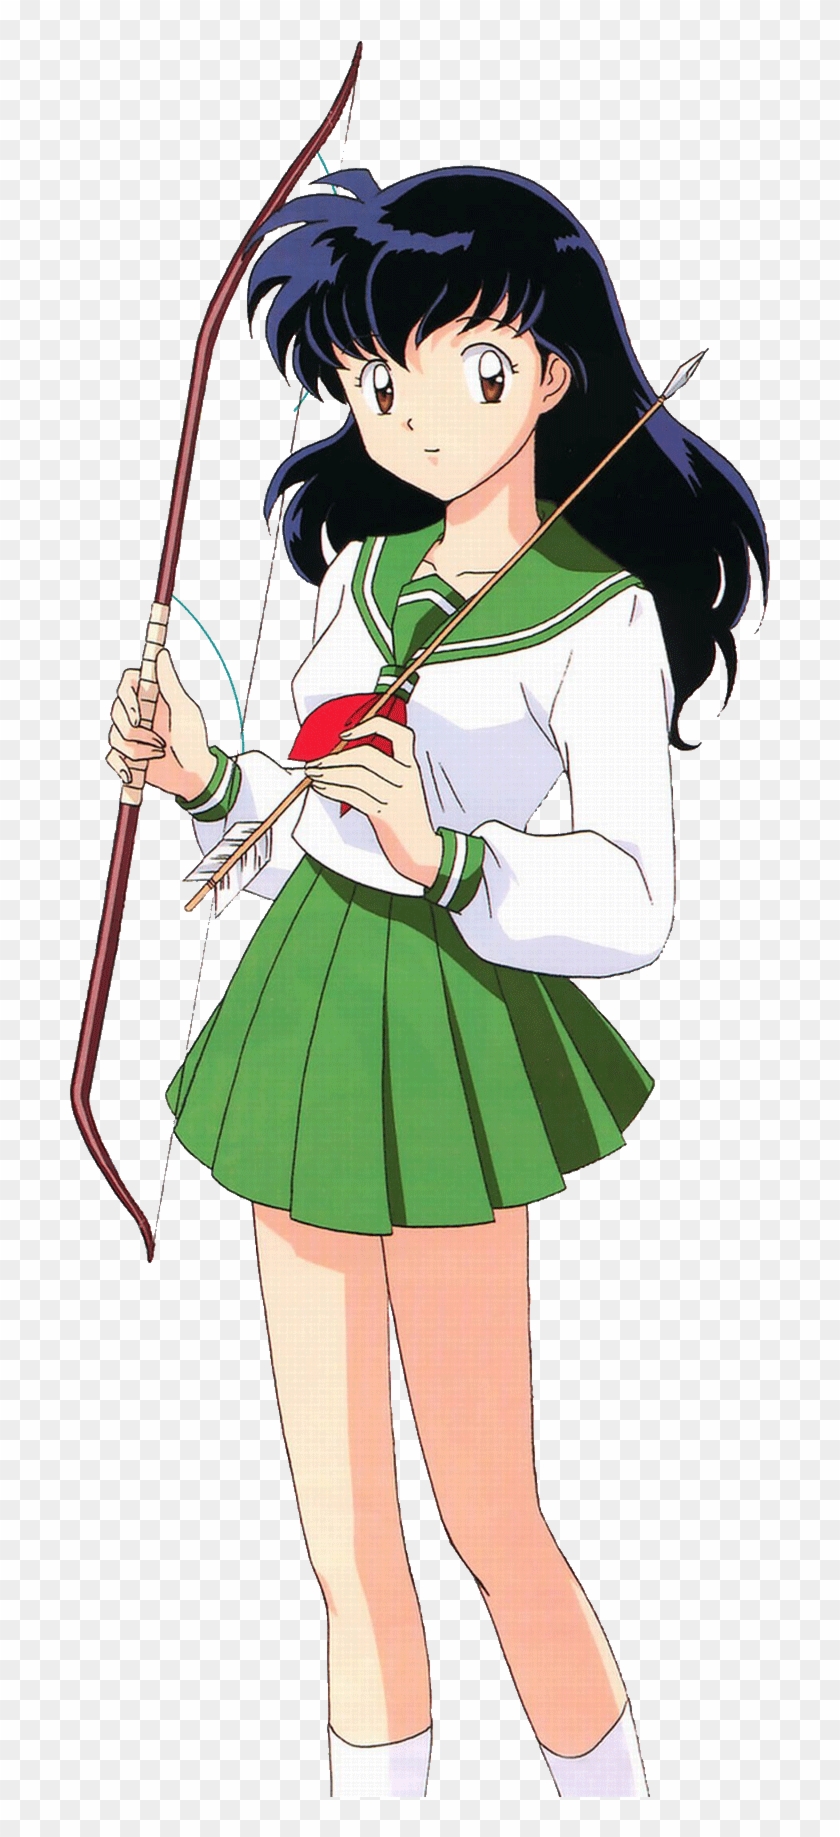 Load 101 More Imagesgrid View - Anime School Uniform Sailor Clipart #3353374